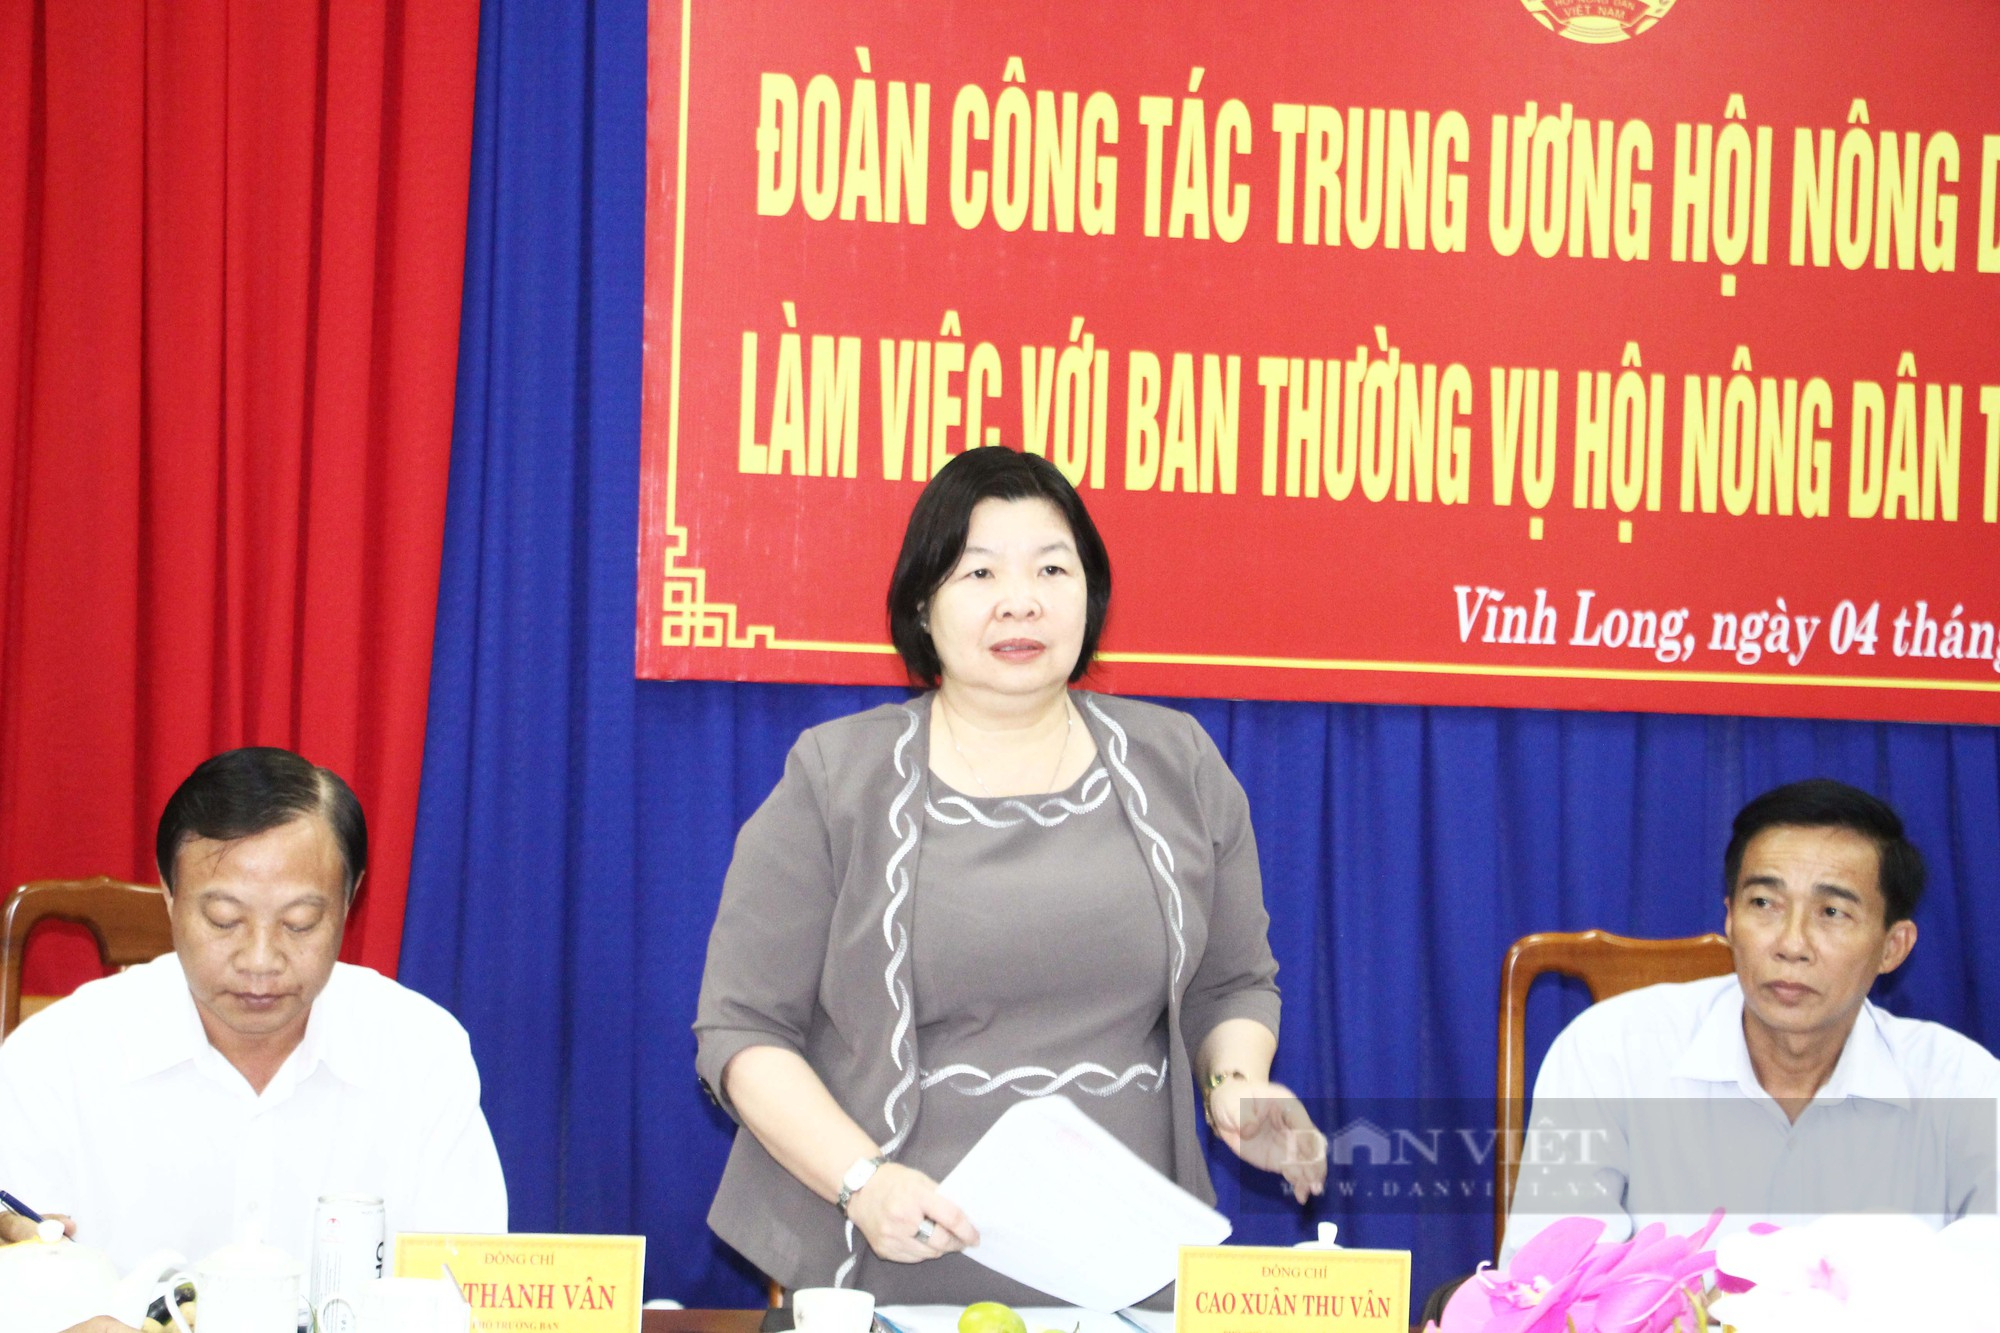 Phó Chủ tịch Hội NDVN Cao Xuân Thu Vân: Vĩnh Long phải xây dựng nhiều mô hình có dấu ấn Hội Nông dân - Ảnh 2.